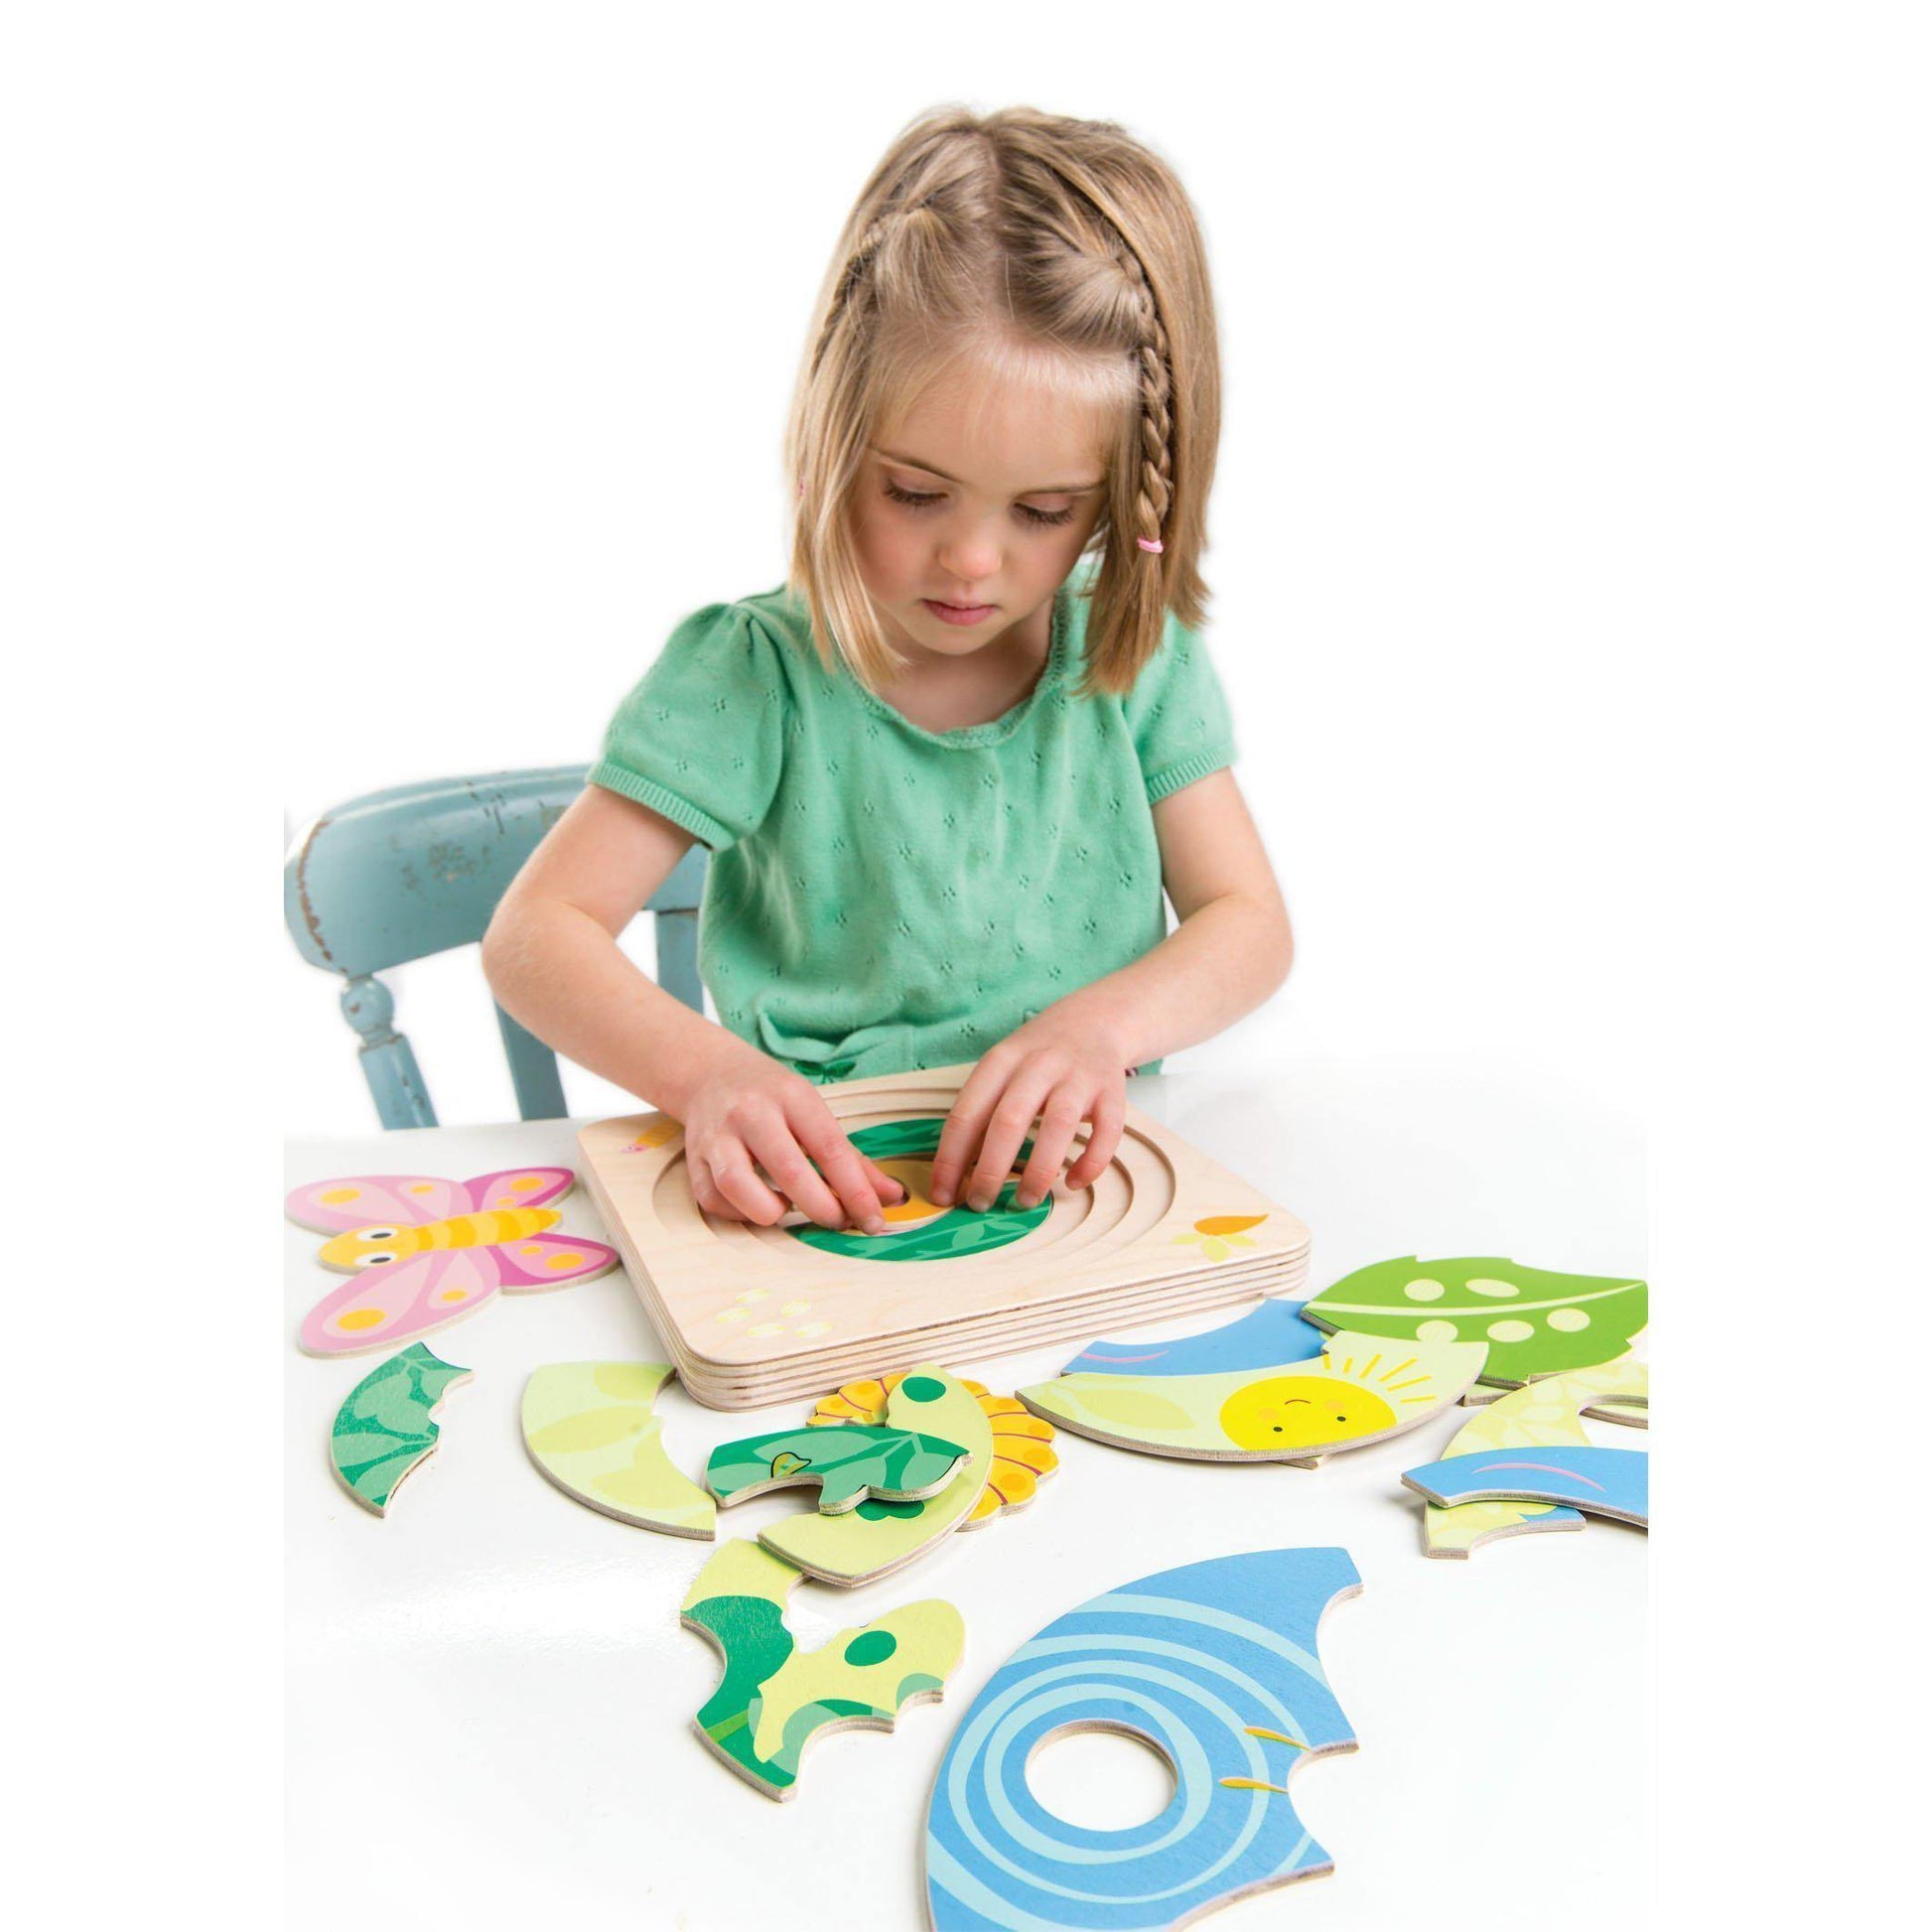 Oktató puzzle A pillangó fejlődése, prémium minőségű fából - Butterfly Life 4in1 - Tender Leaf Toys-Tender Leaf Toys-2-Játszma.ro - A maradandó élmények boltja